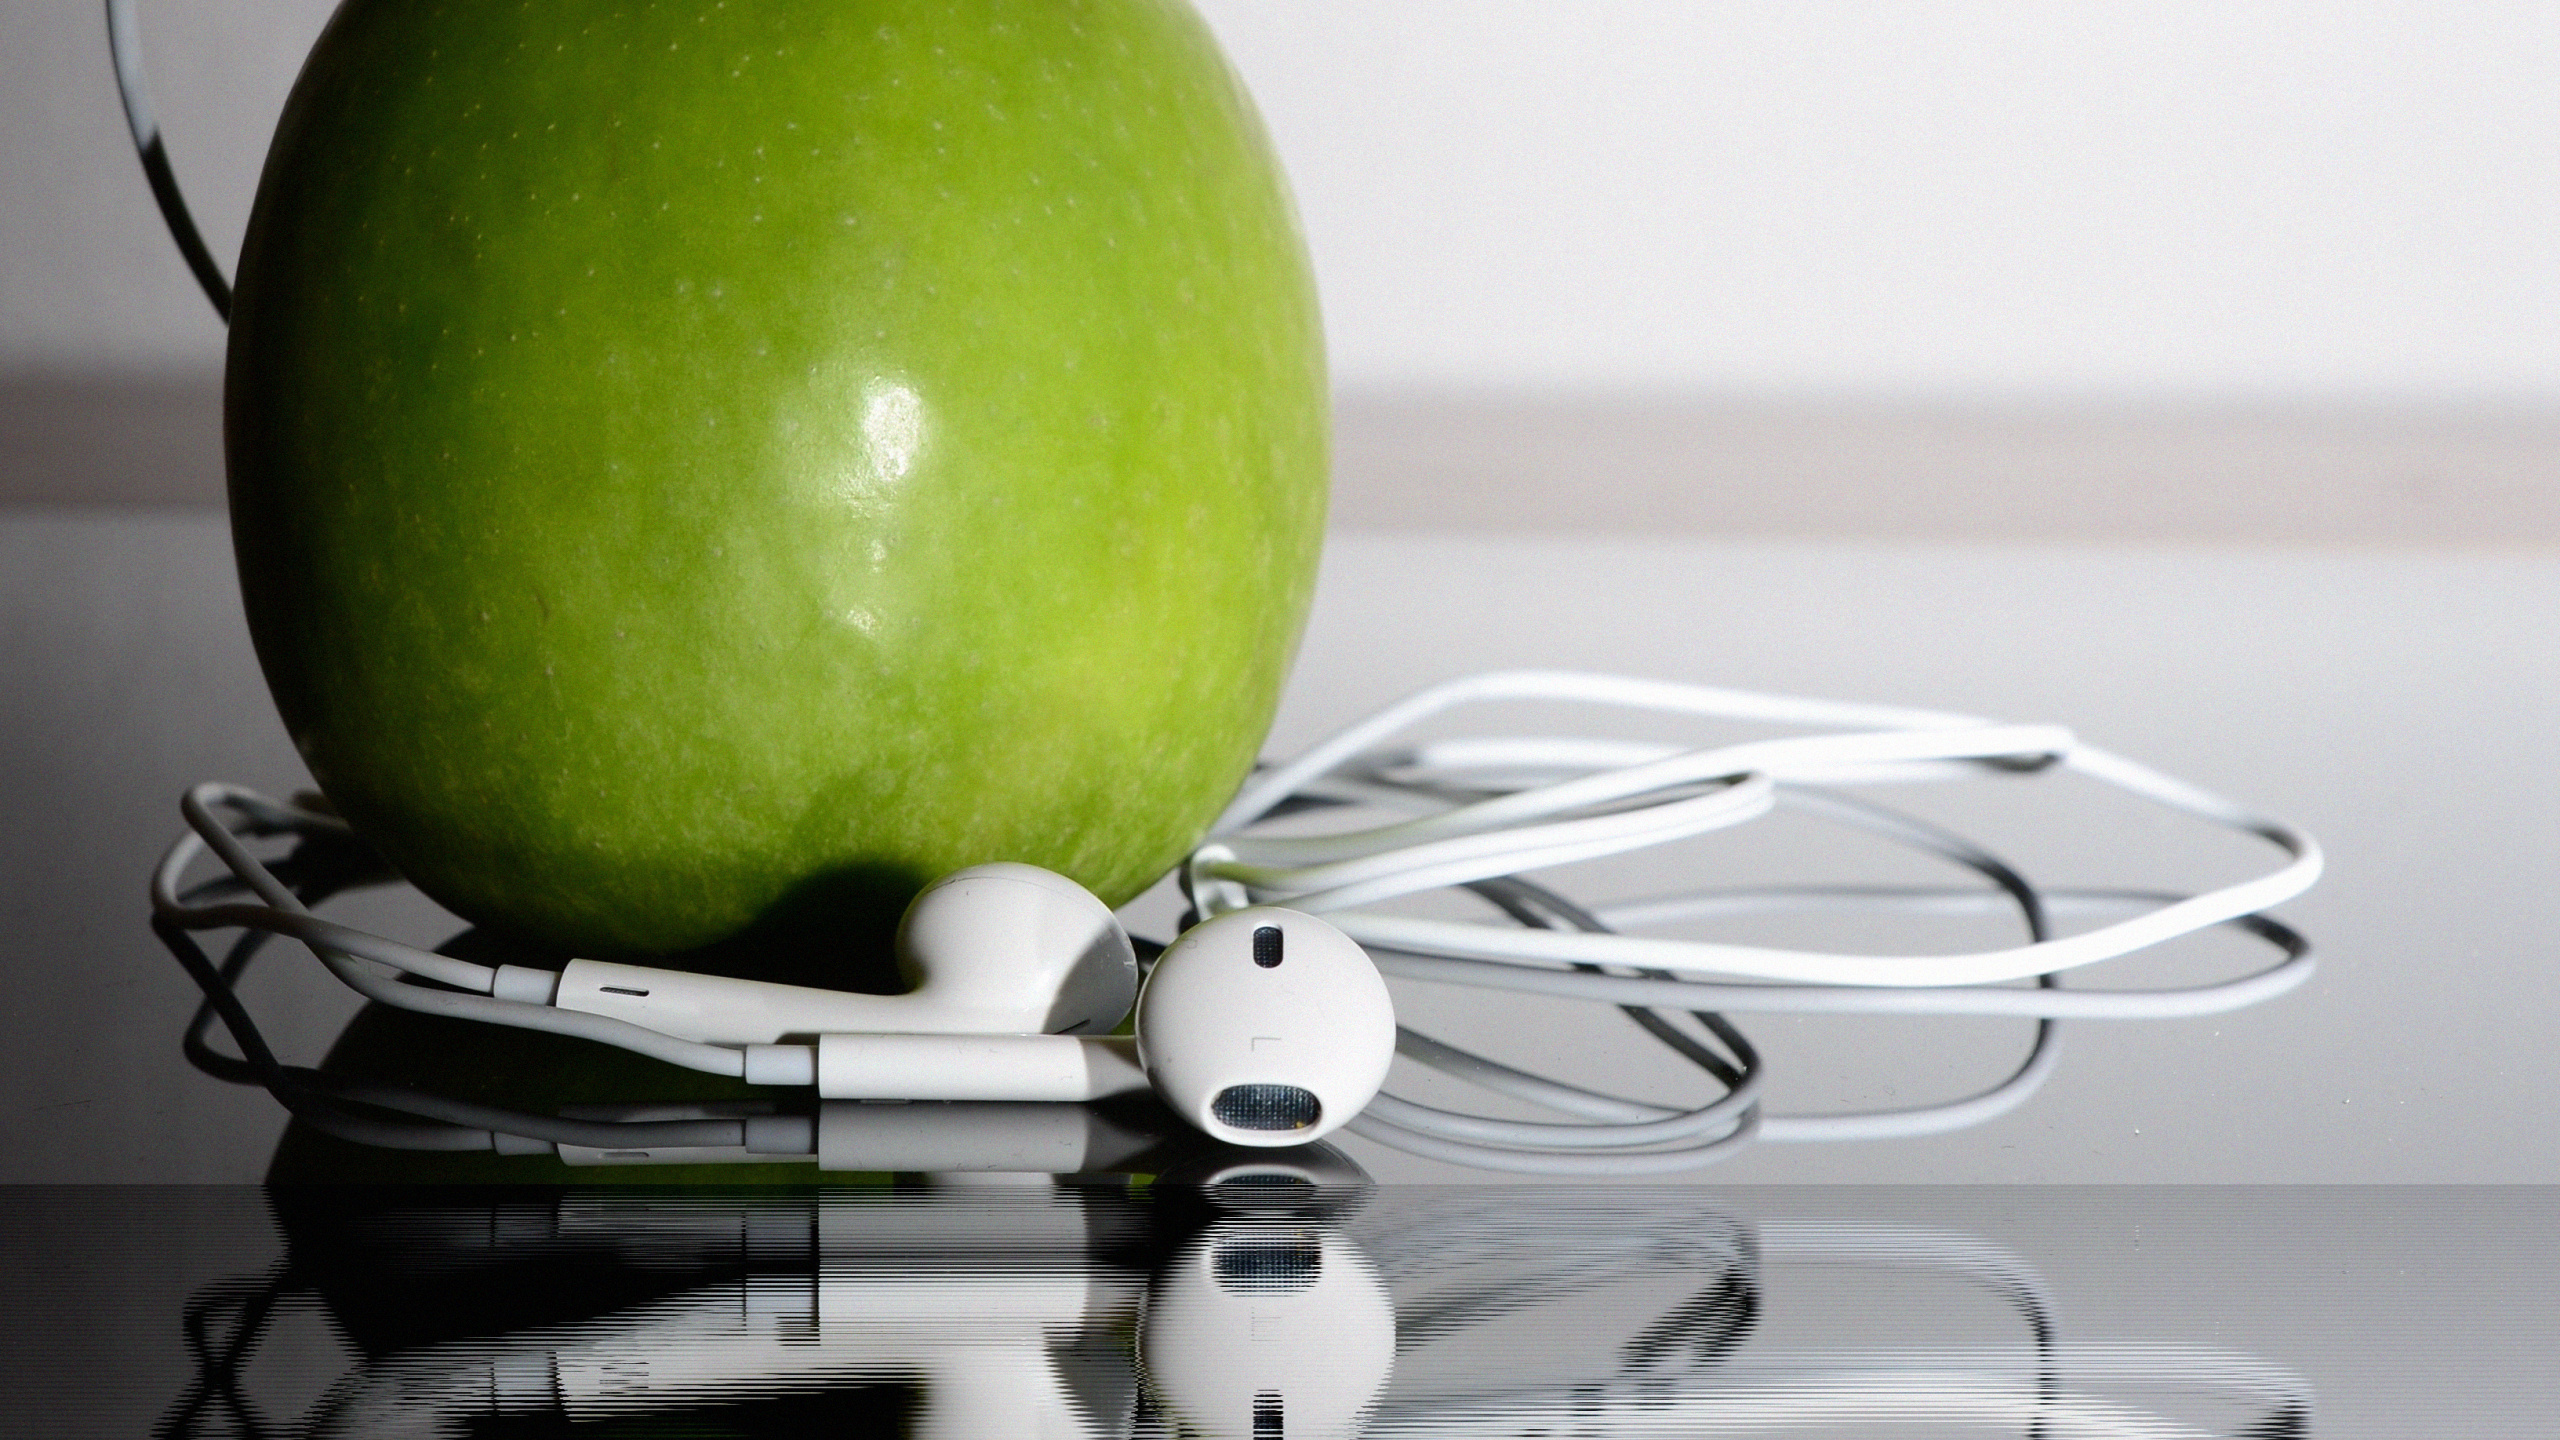 苹果的耳机, 绿色的, 奶奶史密斯, Apple, 食品 壁纸 2560x1440 允许